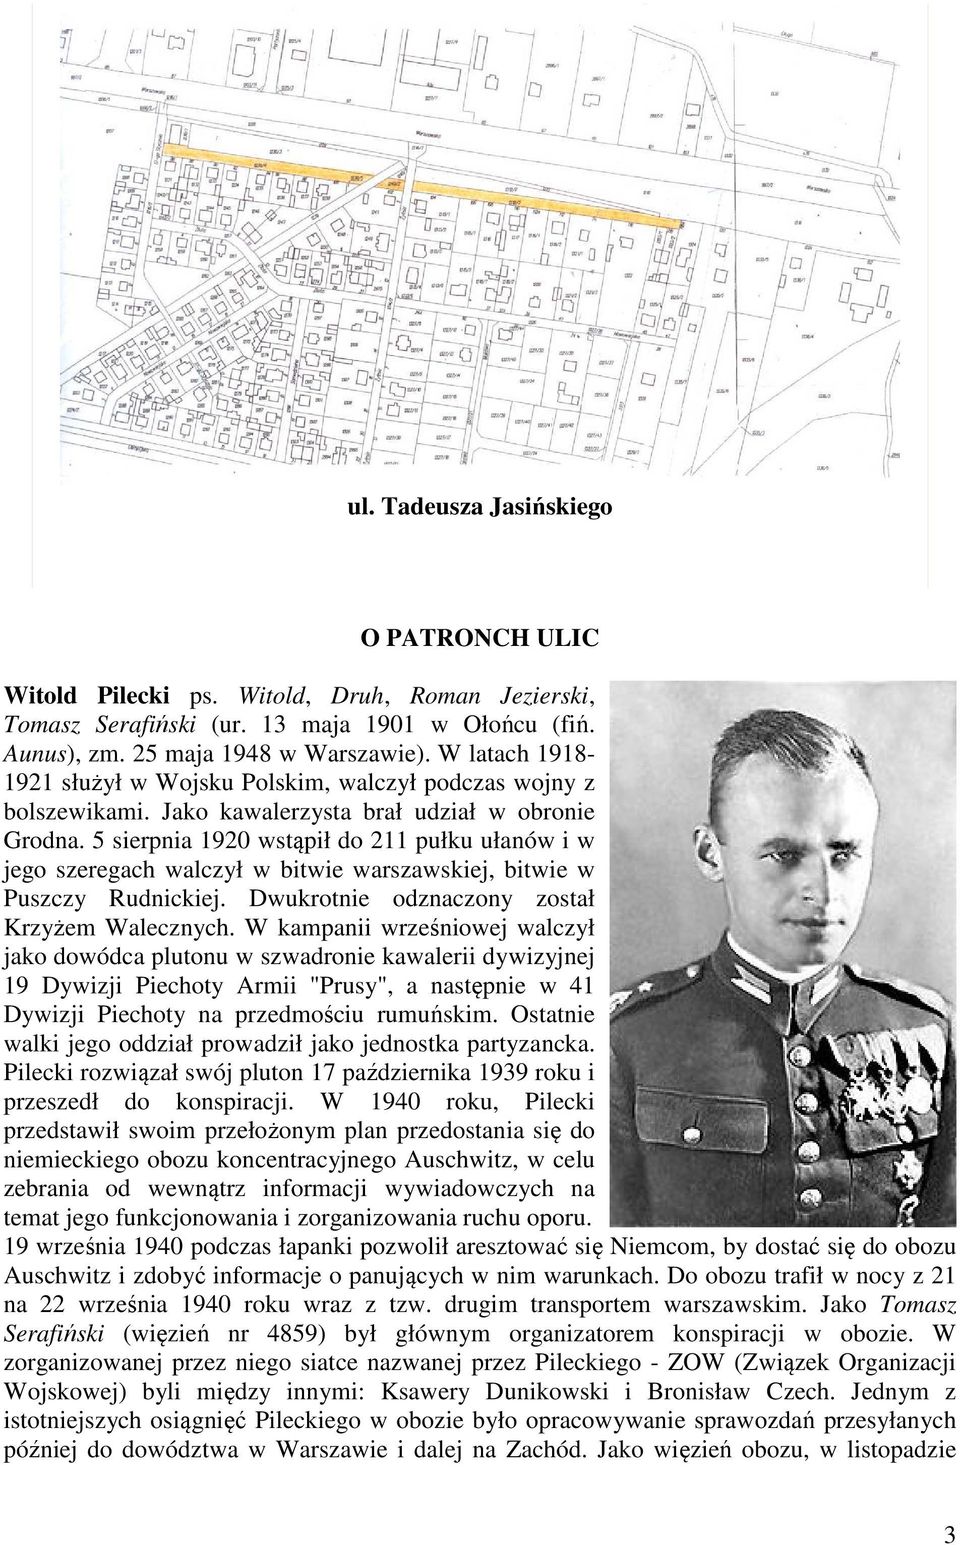 5 sierpnia 1920 wstąpił do 211 pułku ułanów i w jego szeregach walczył w bitwie warszawskiej, bitwie w Puszczy Rudnickiej. Dwukrotnie odznaczony został Krzyżem Walecznych.